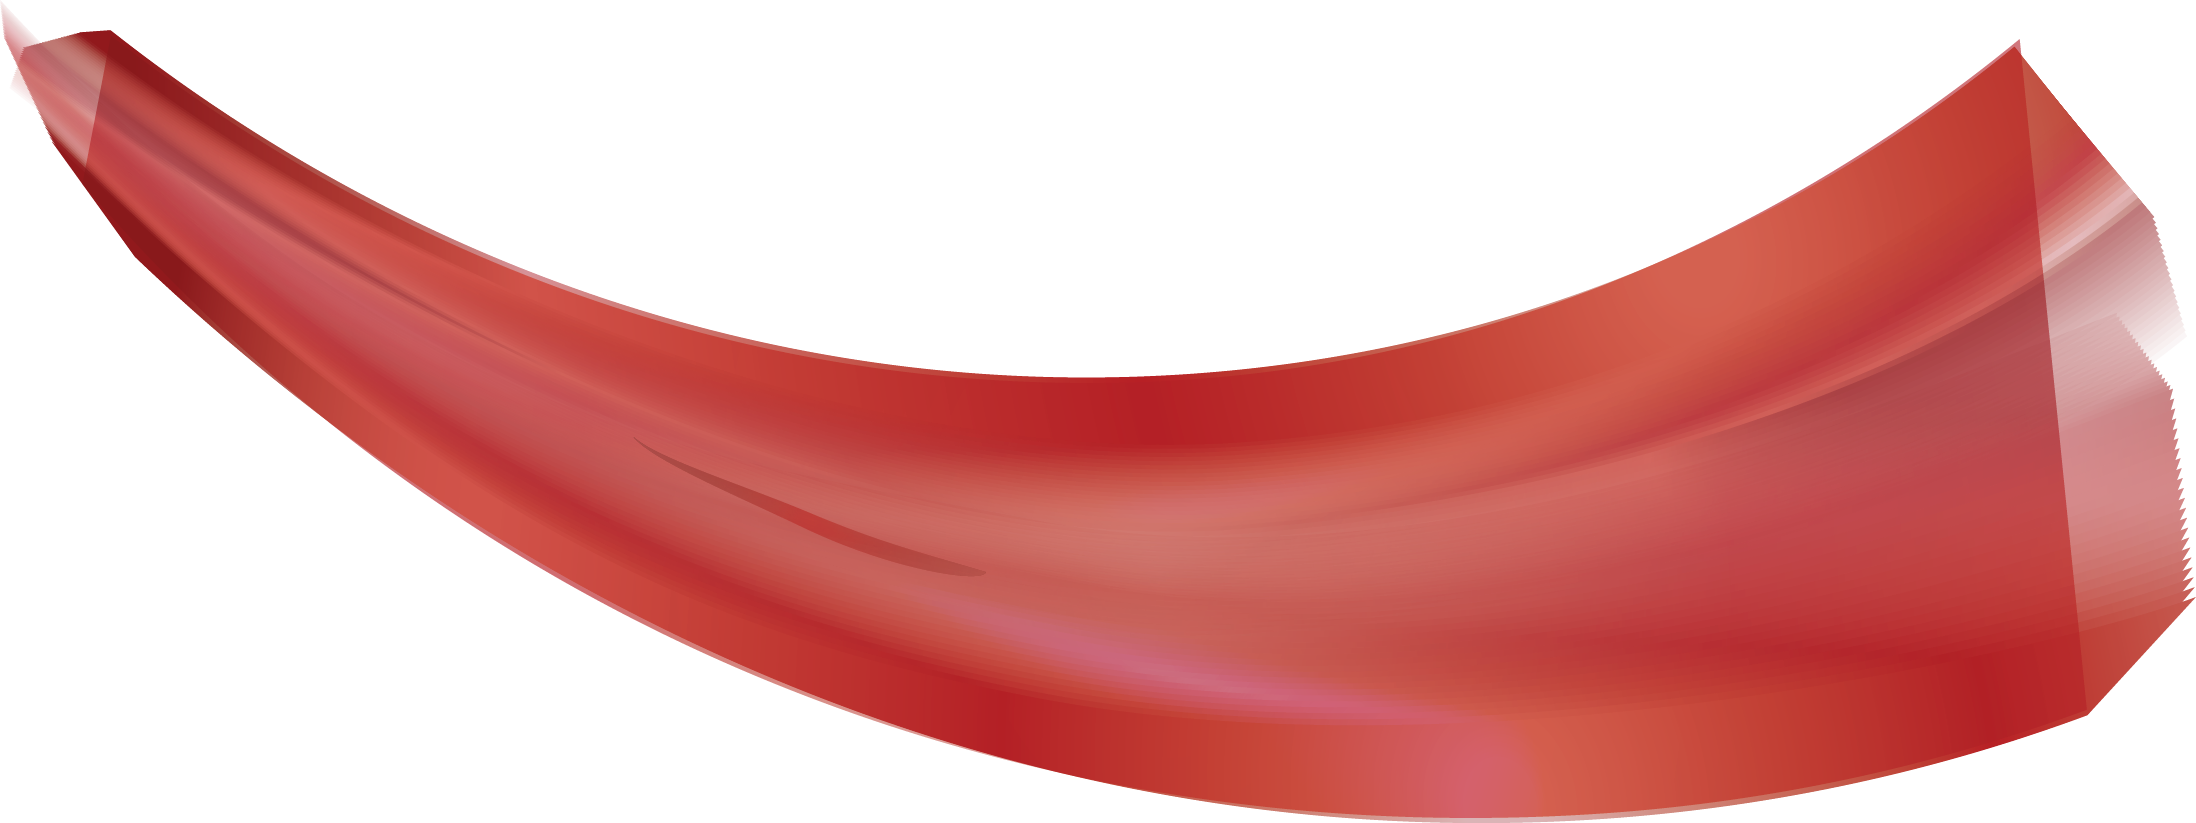 Gambar PNG gelombang merah